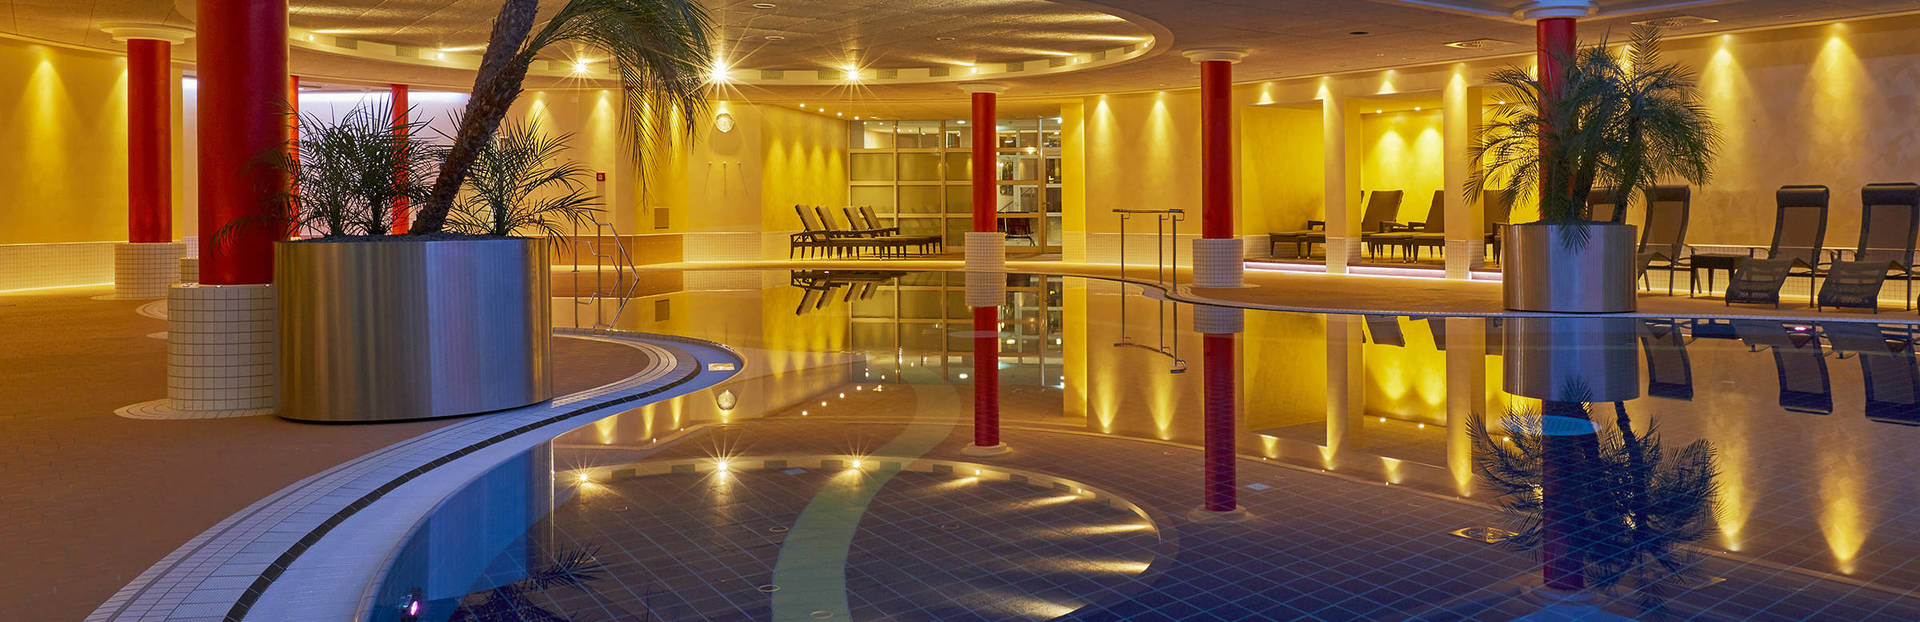 Wellness im H+ Hotel & Spa Friedrichroda - Offizielle Webseite